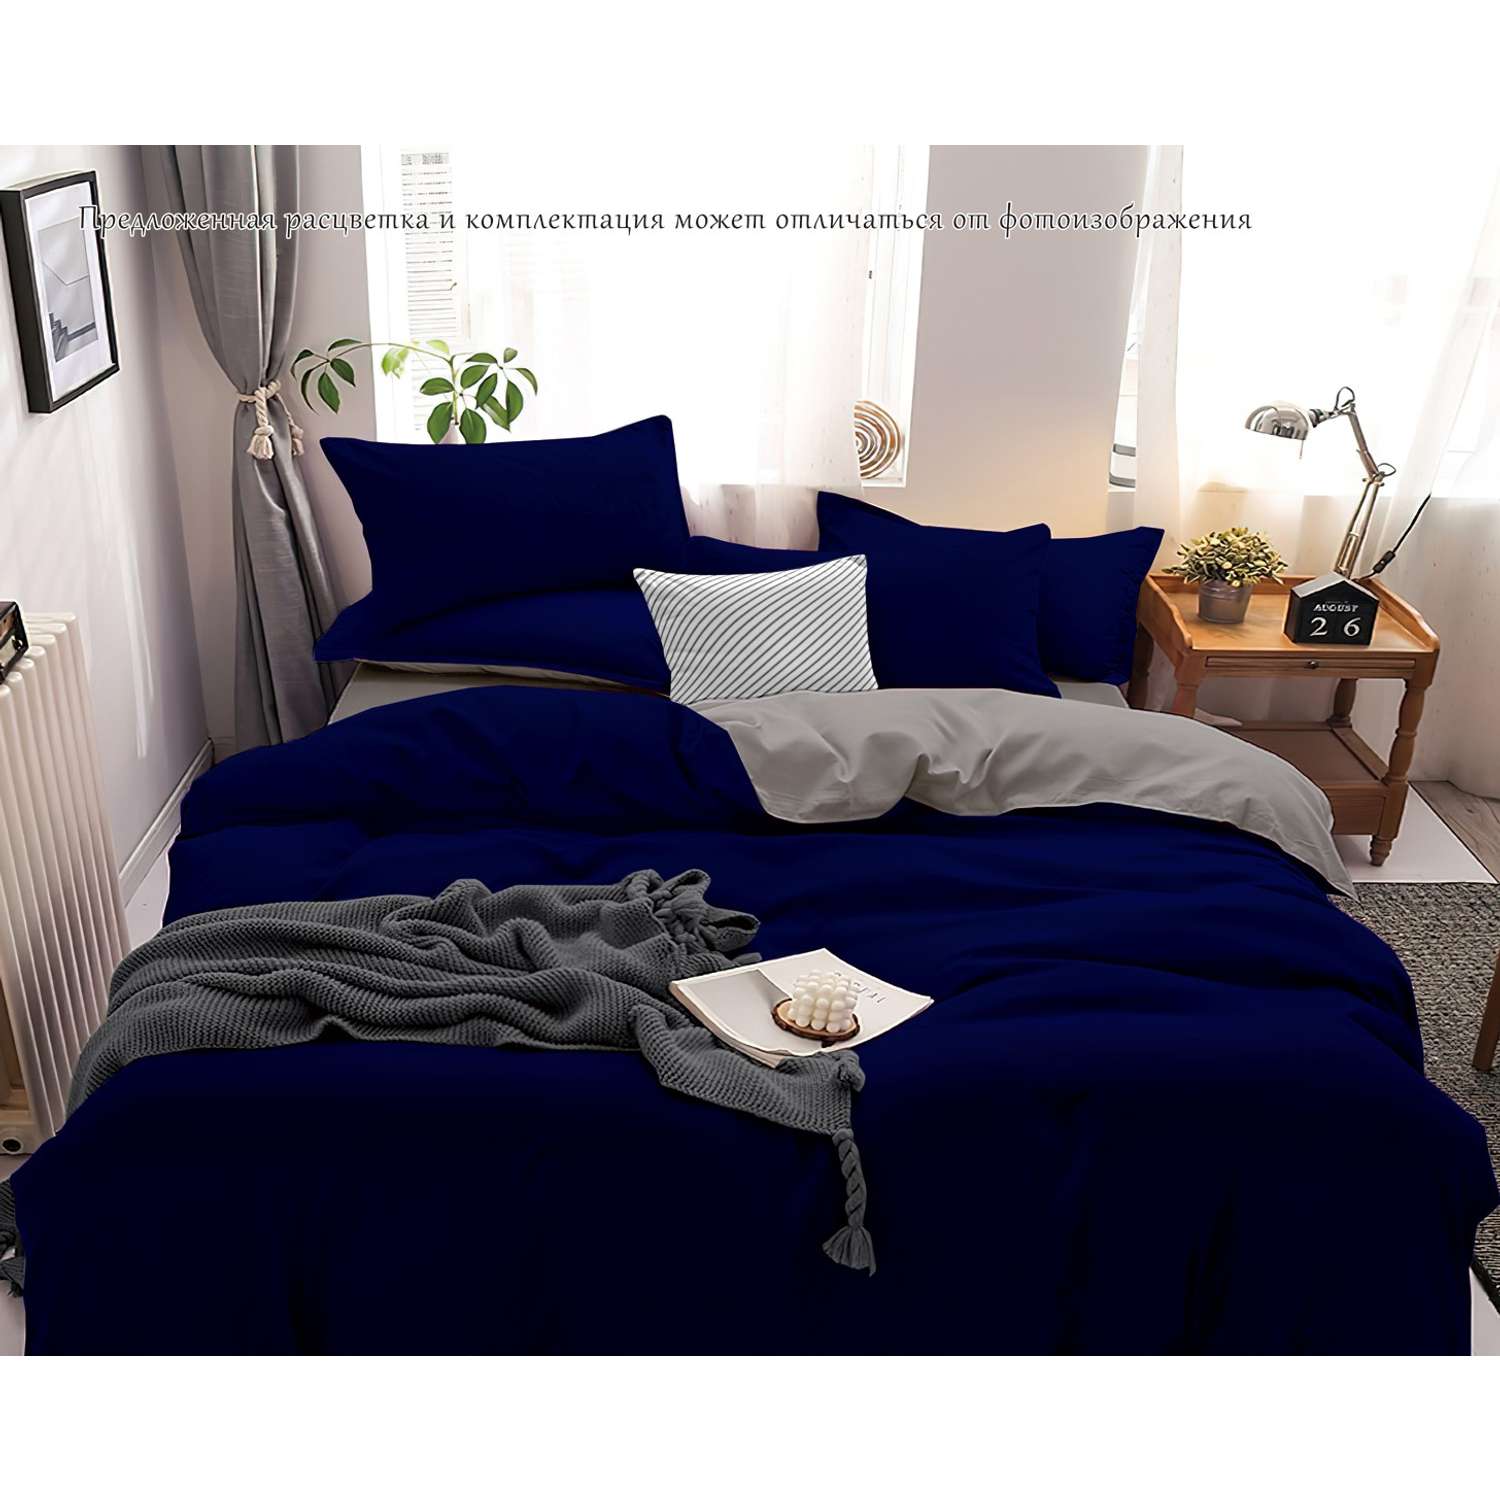 Комплект постельного белья PAVLine Манетти полисатин 1.5 сп. темно-синий/серый S32 - фото 2